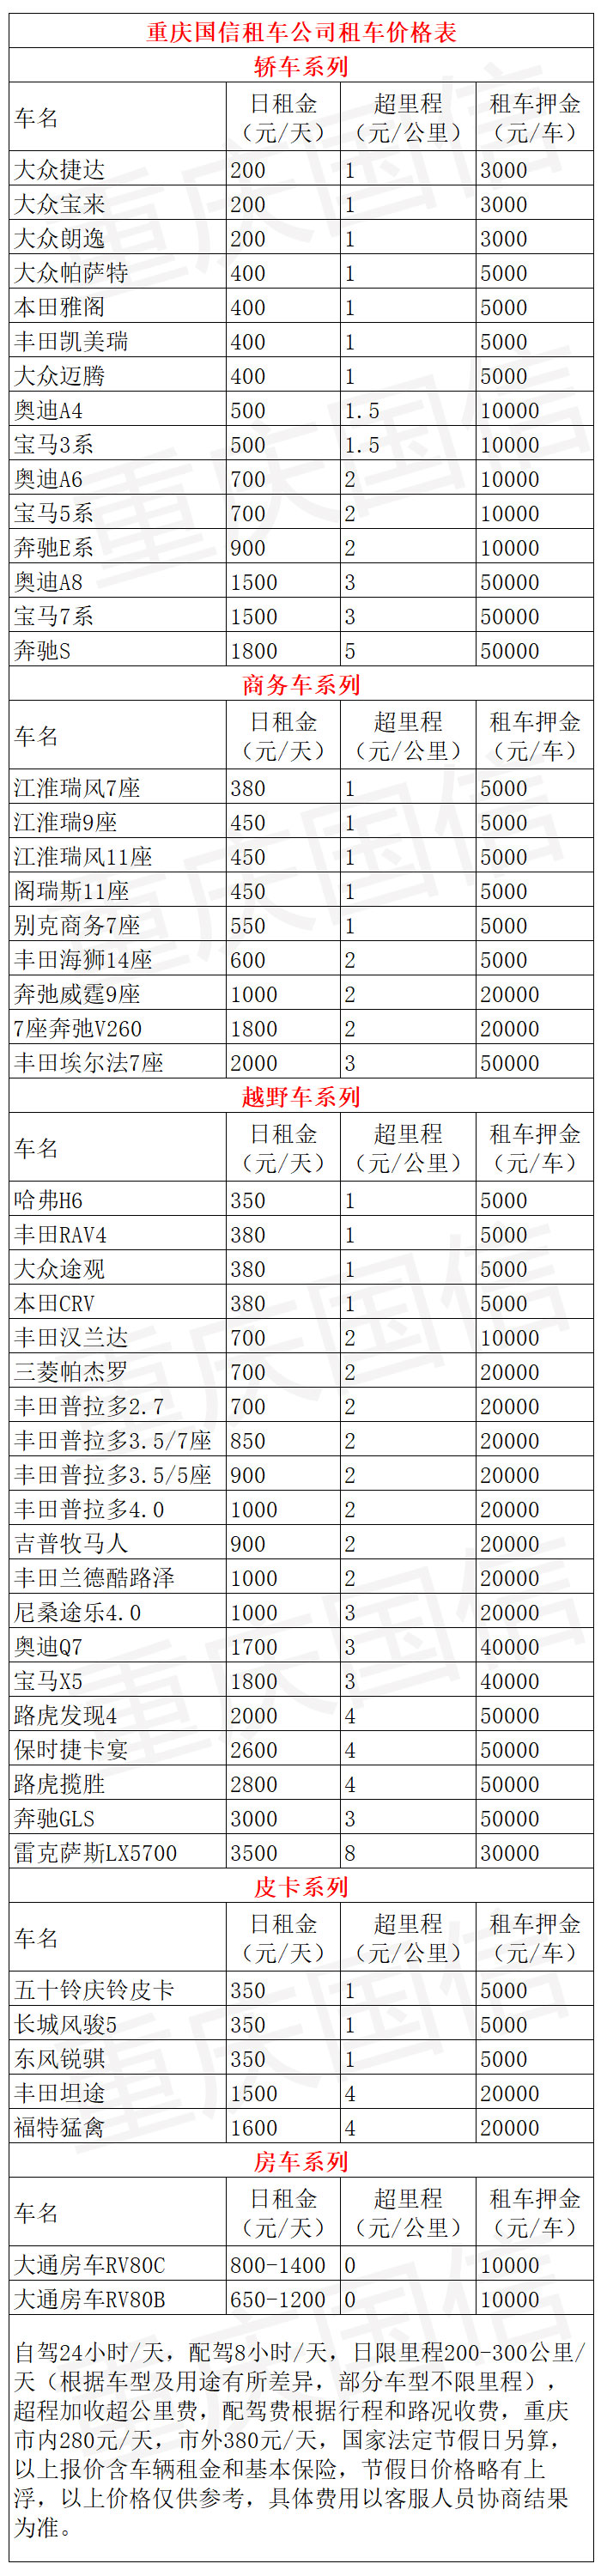 重庆自驾租车旅游价格表